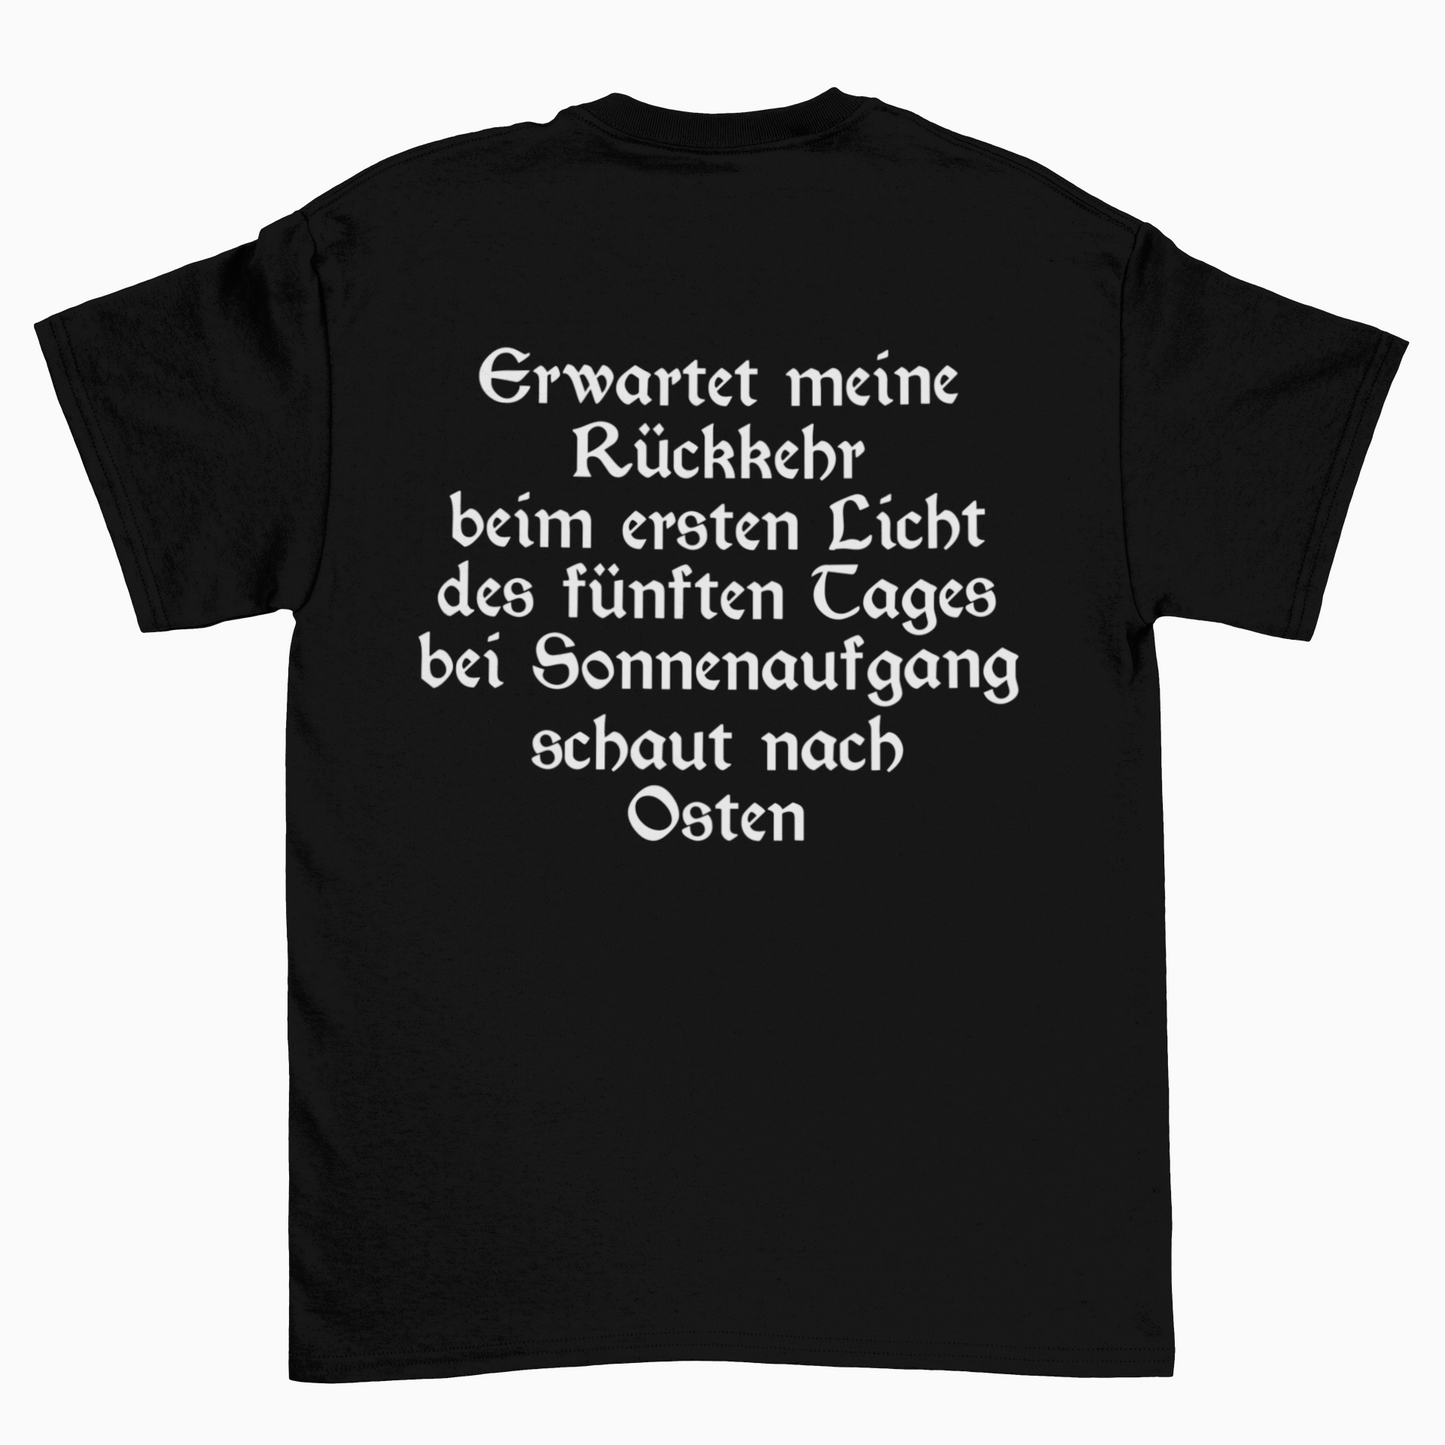 Tüv fahren (Front+Backprint)  - Unisex Shirt